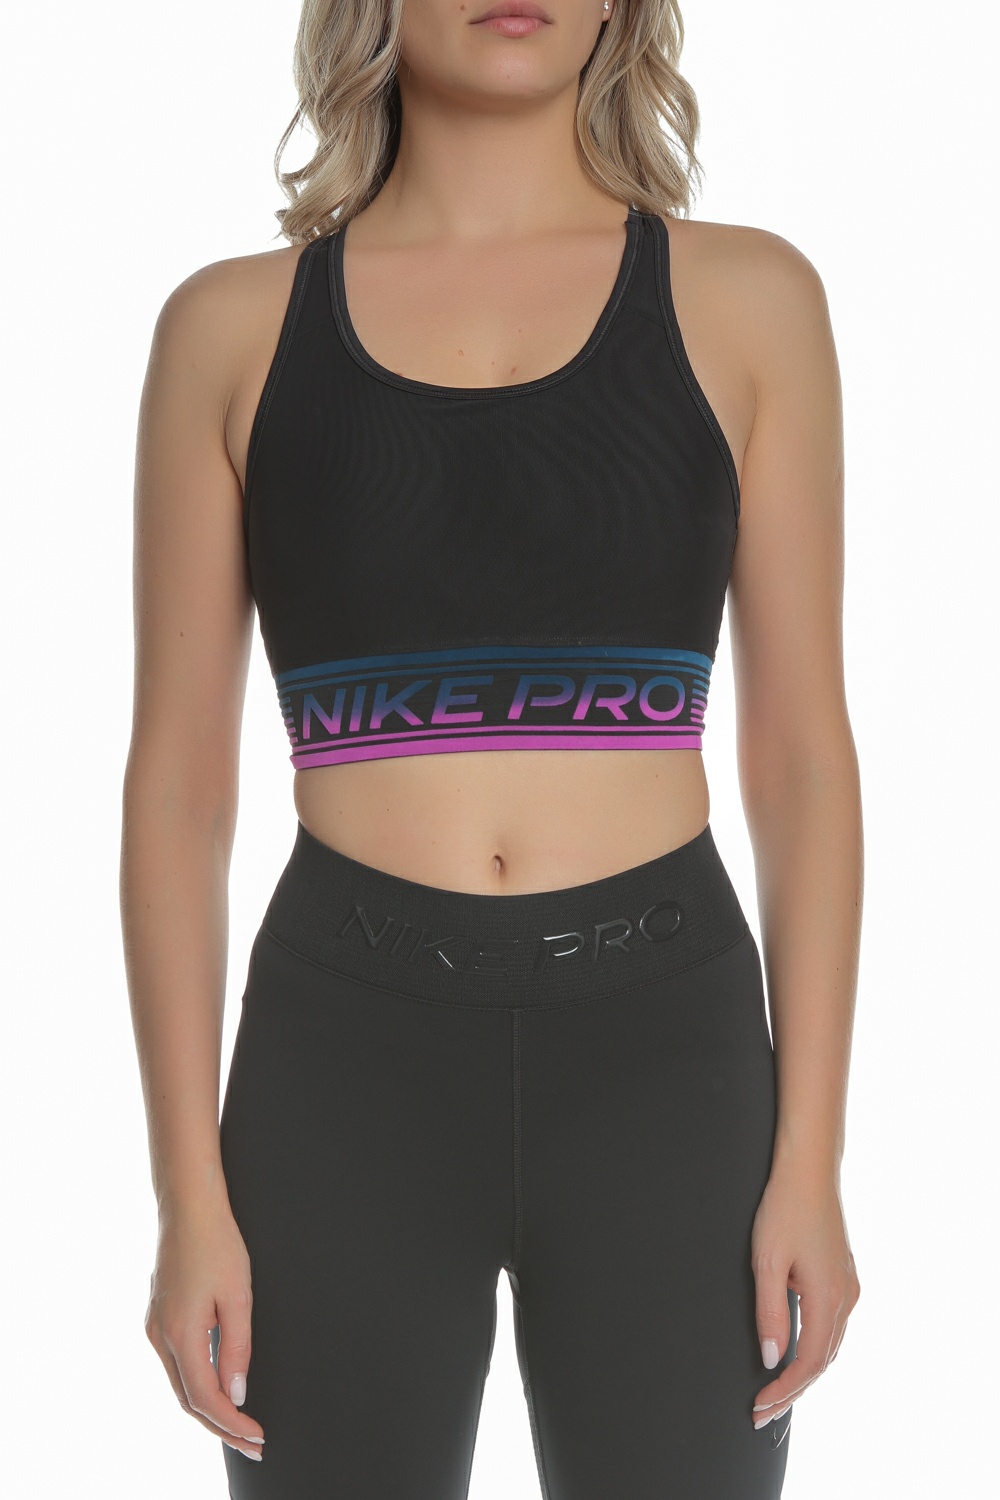 Γυναικεία/Ρούχα/Αθλητικά/Μπουστάκια NIKE - Γυναικείο αθλητικό μπουστάκι Nike SWOOSH MESH BRA NP PAD μαύρο